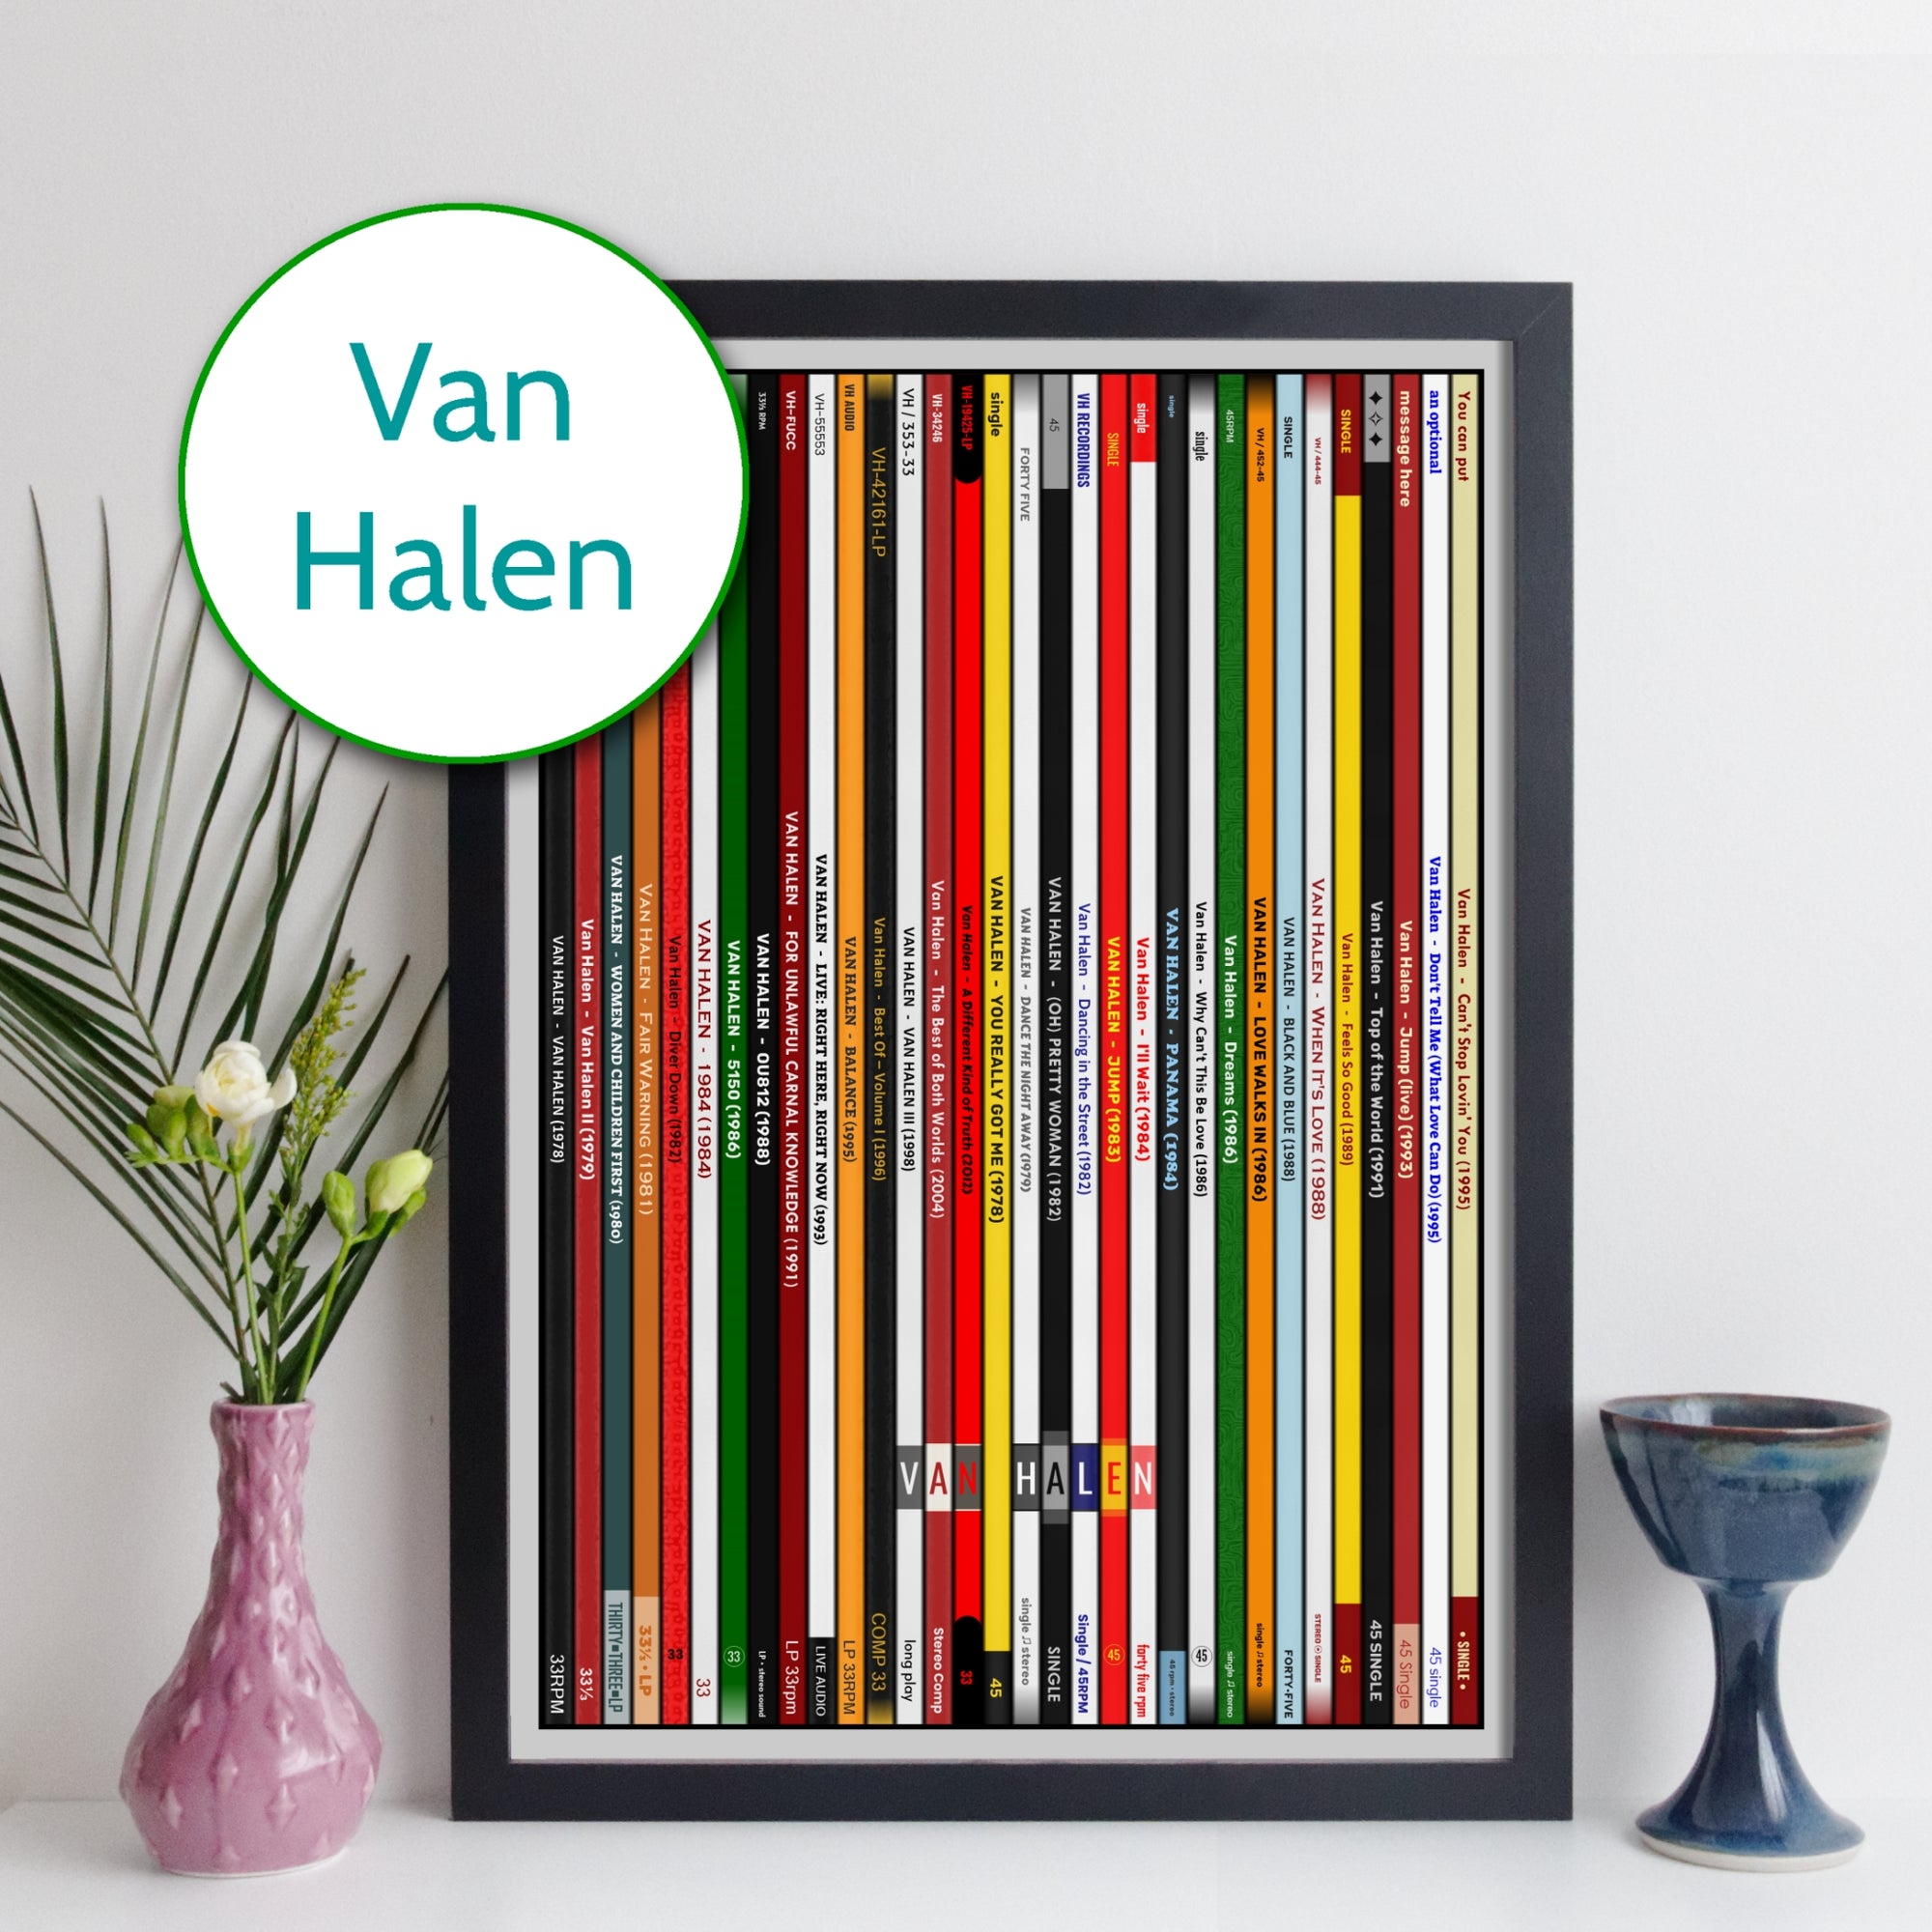 Van Halen Discography Print